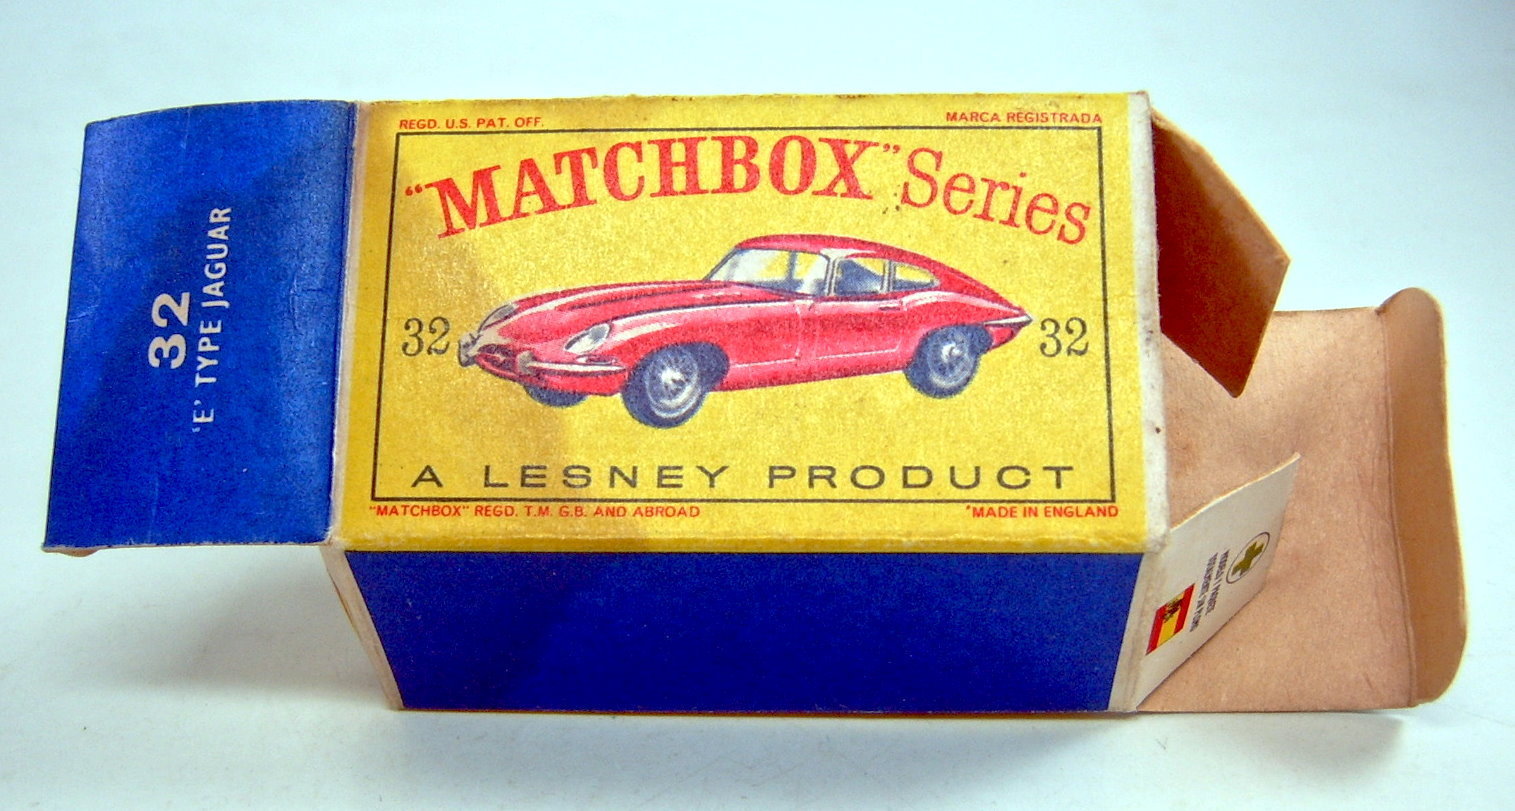 Reproduction Box by DRRB Matchbox 1-75 #32b E-Type Jaguar 